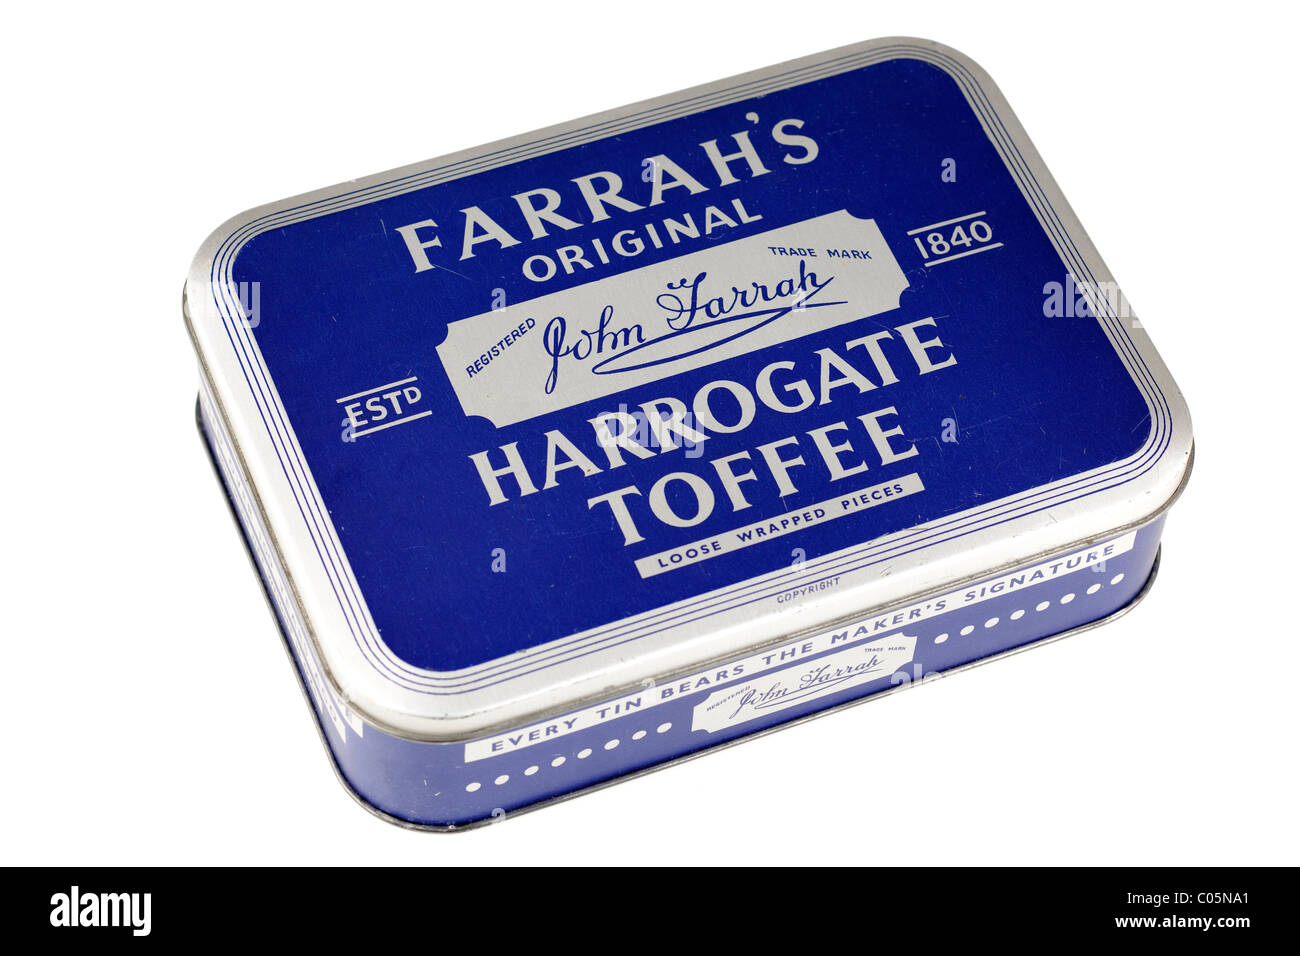 Vecchio vintage Farrah stagno originale di Harrogate toffee. Solo editoriale Foto Stock